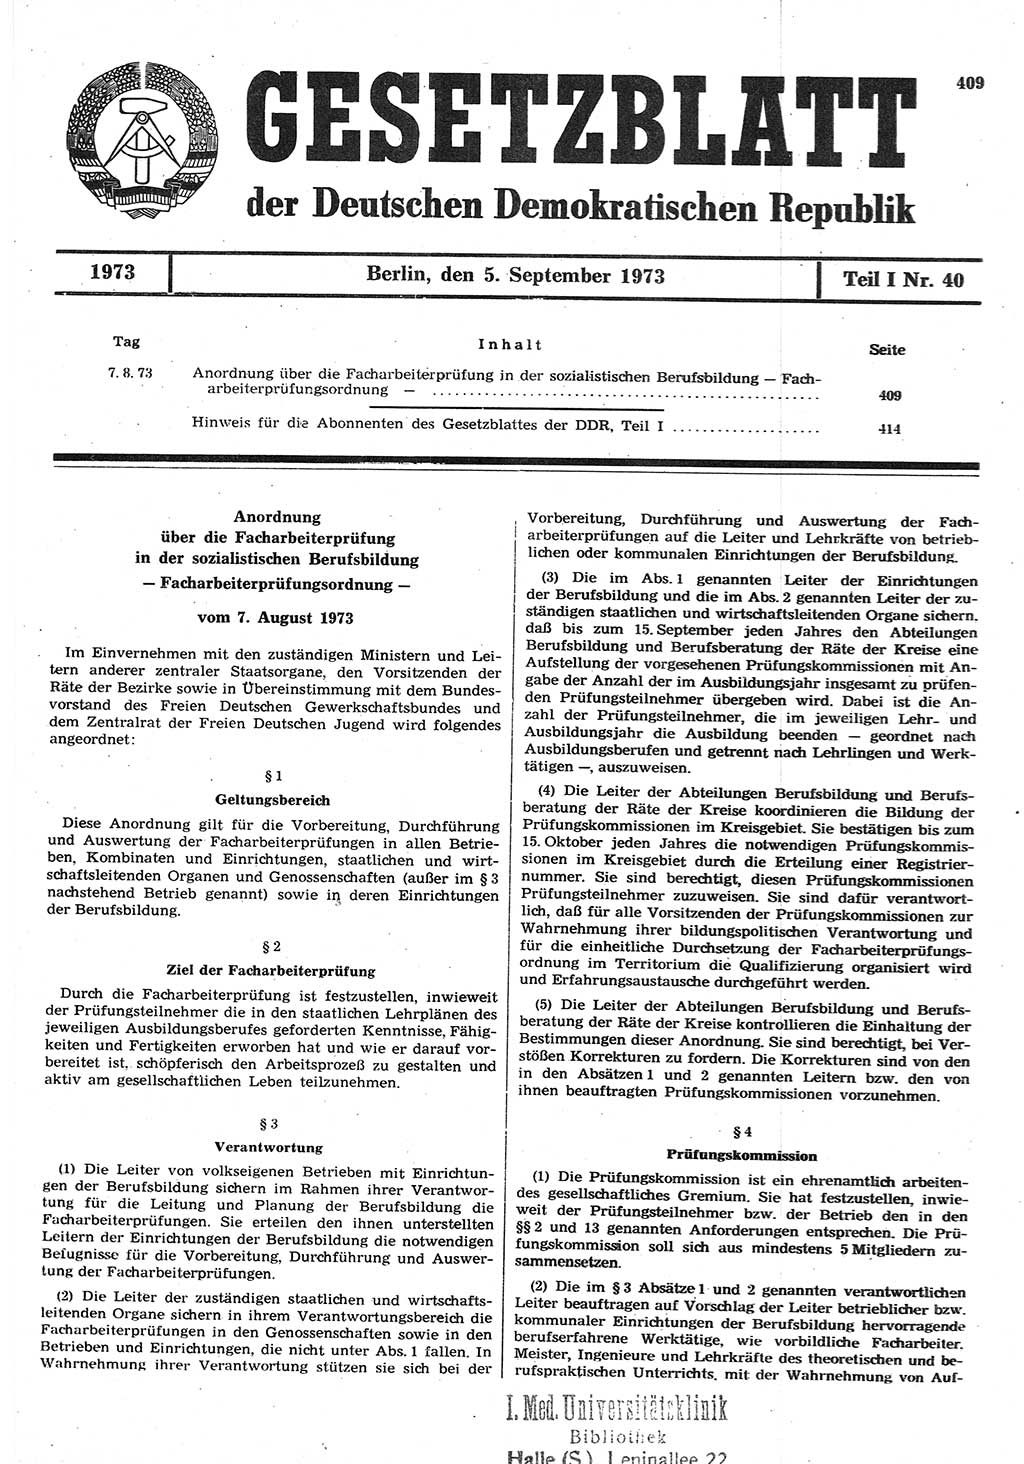 Gesetzblatt (GBl.) der Deutschen Demokratischen Republik (DDR) Teil Ⅰ 1973, Seite 409 (GBl. DDR Ⅰ 1973, S. 409)